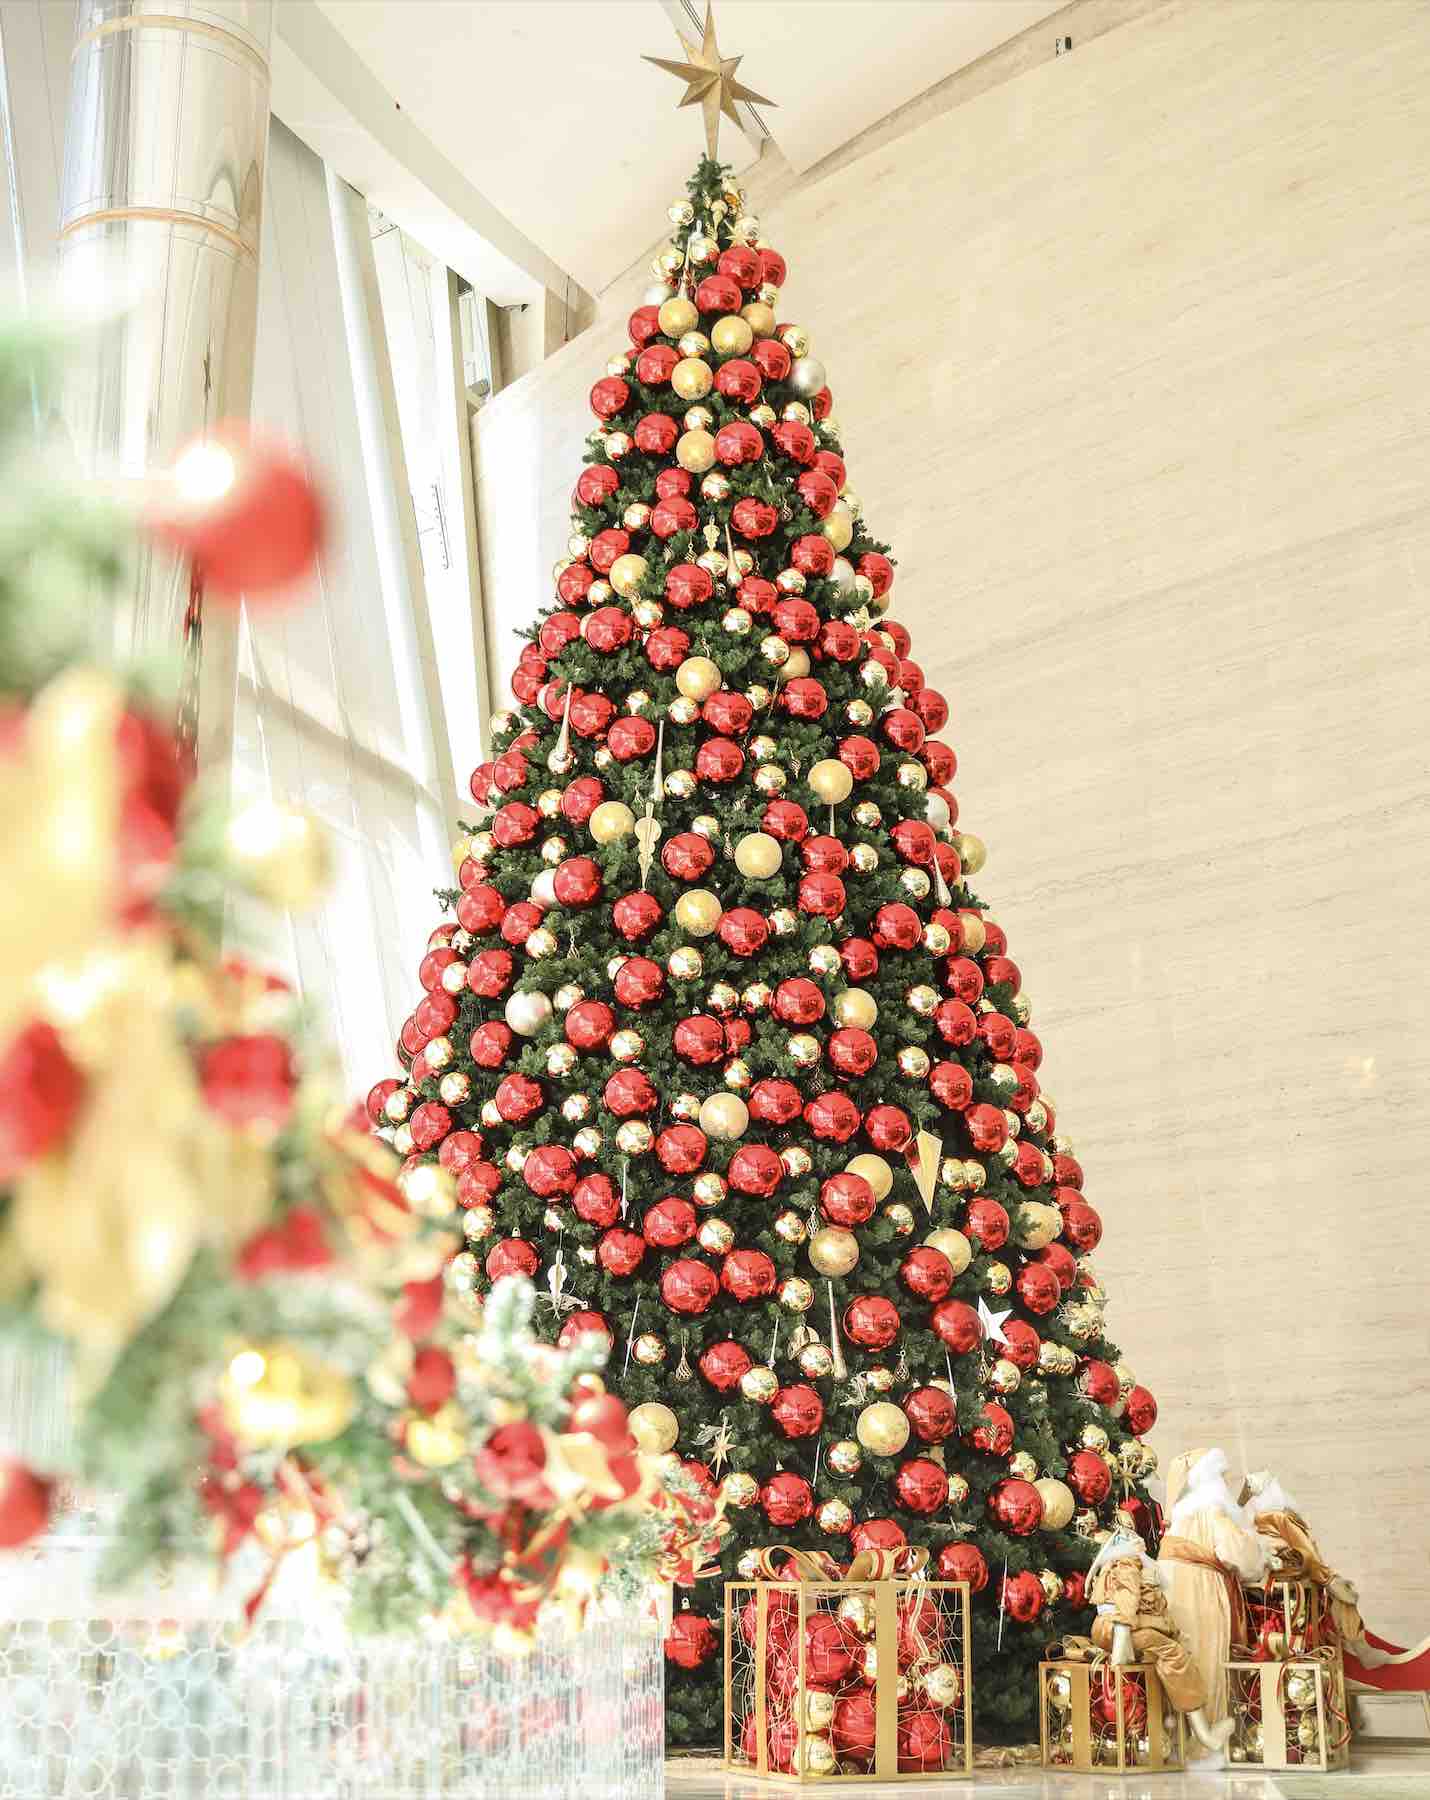 Christmas at Conrad Abu Dhabi